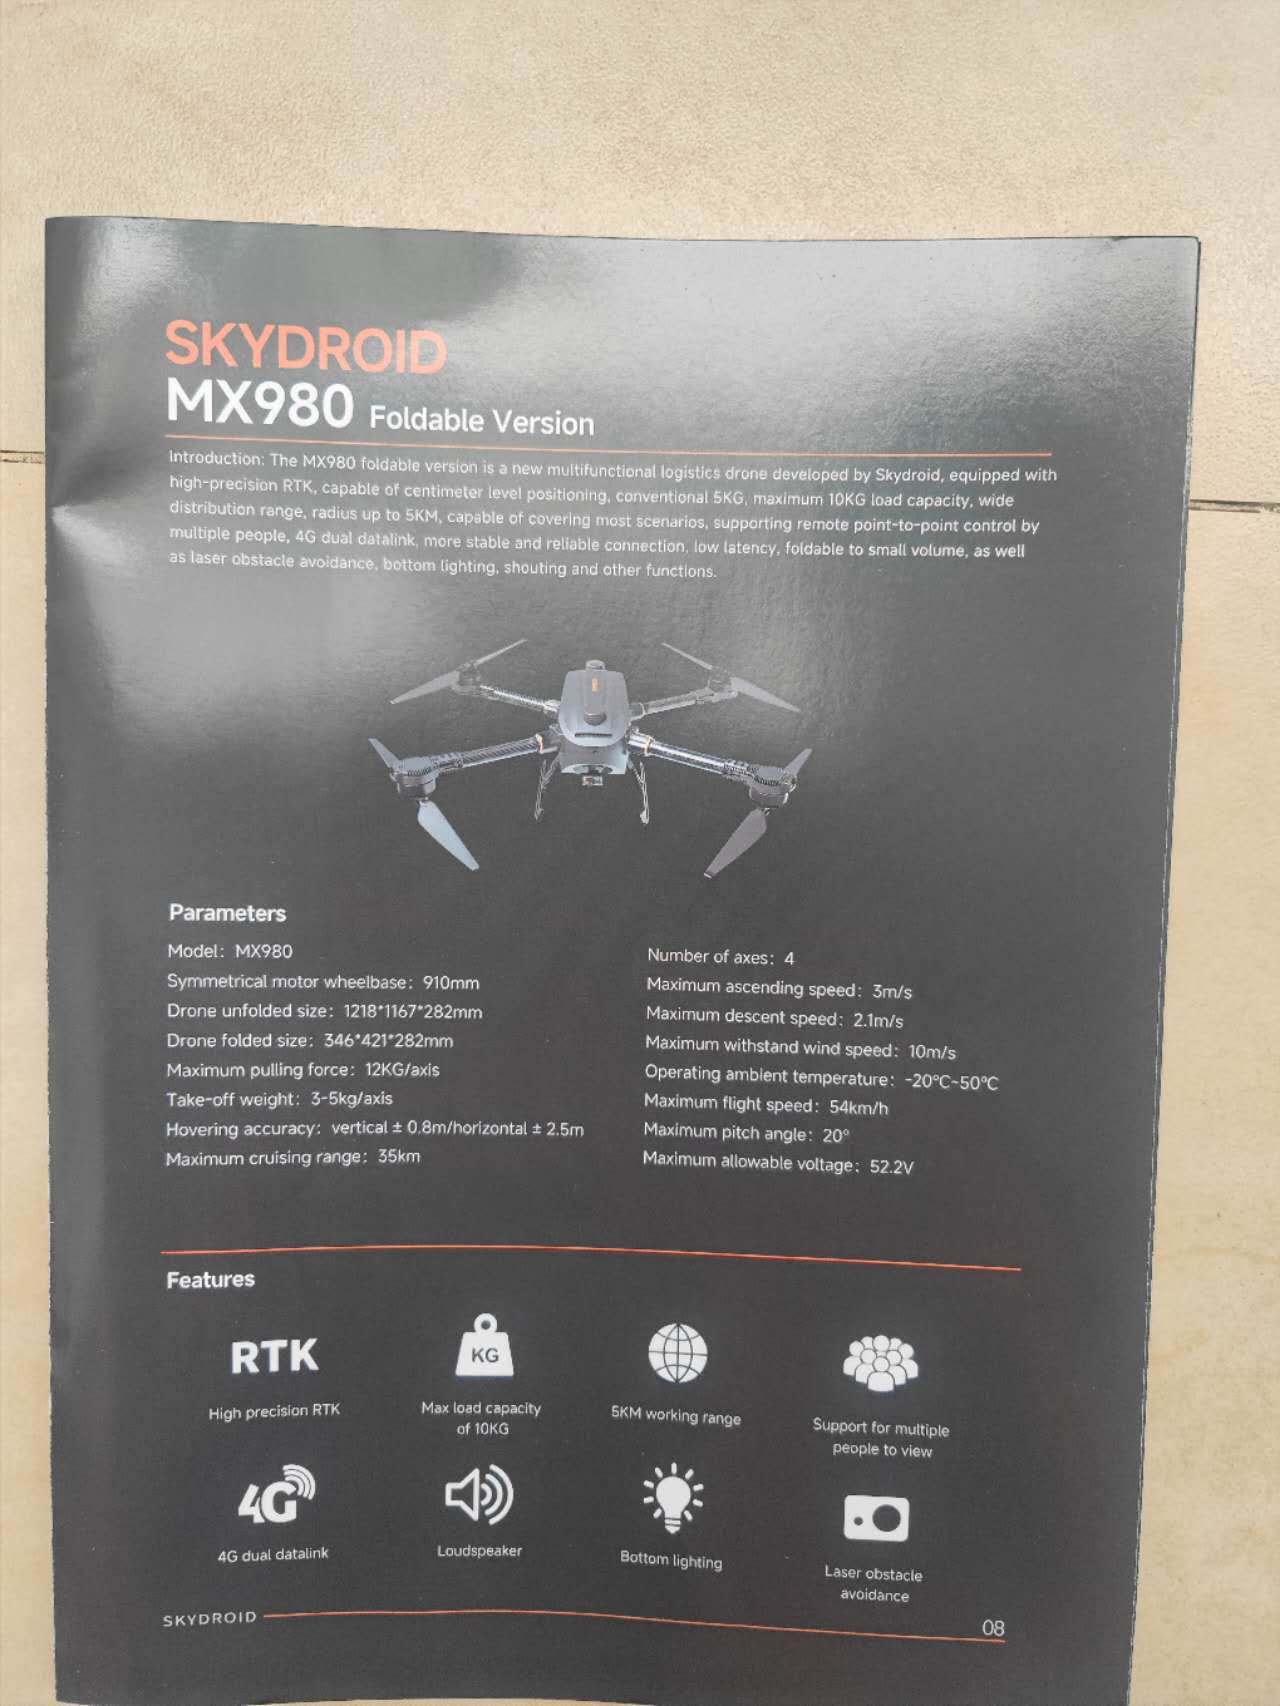 Skydroid MX980 드론 - 5KG / 10KG 이륙 중량 35KM / 5KM 순항 범위 4G 듀얼 데이터링크 RTK 포지셔닝 확성기가 있는 산업용 드론